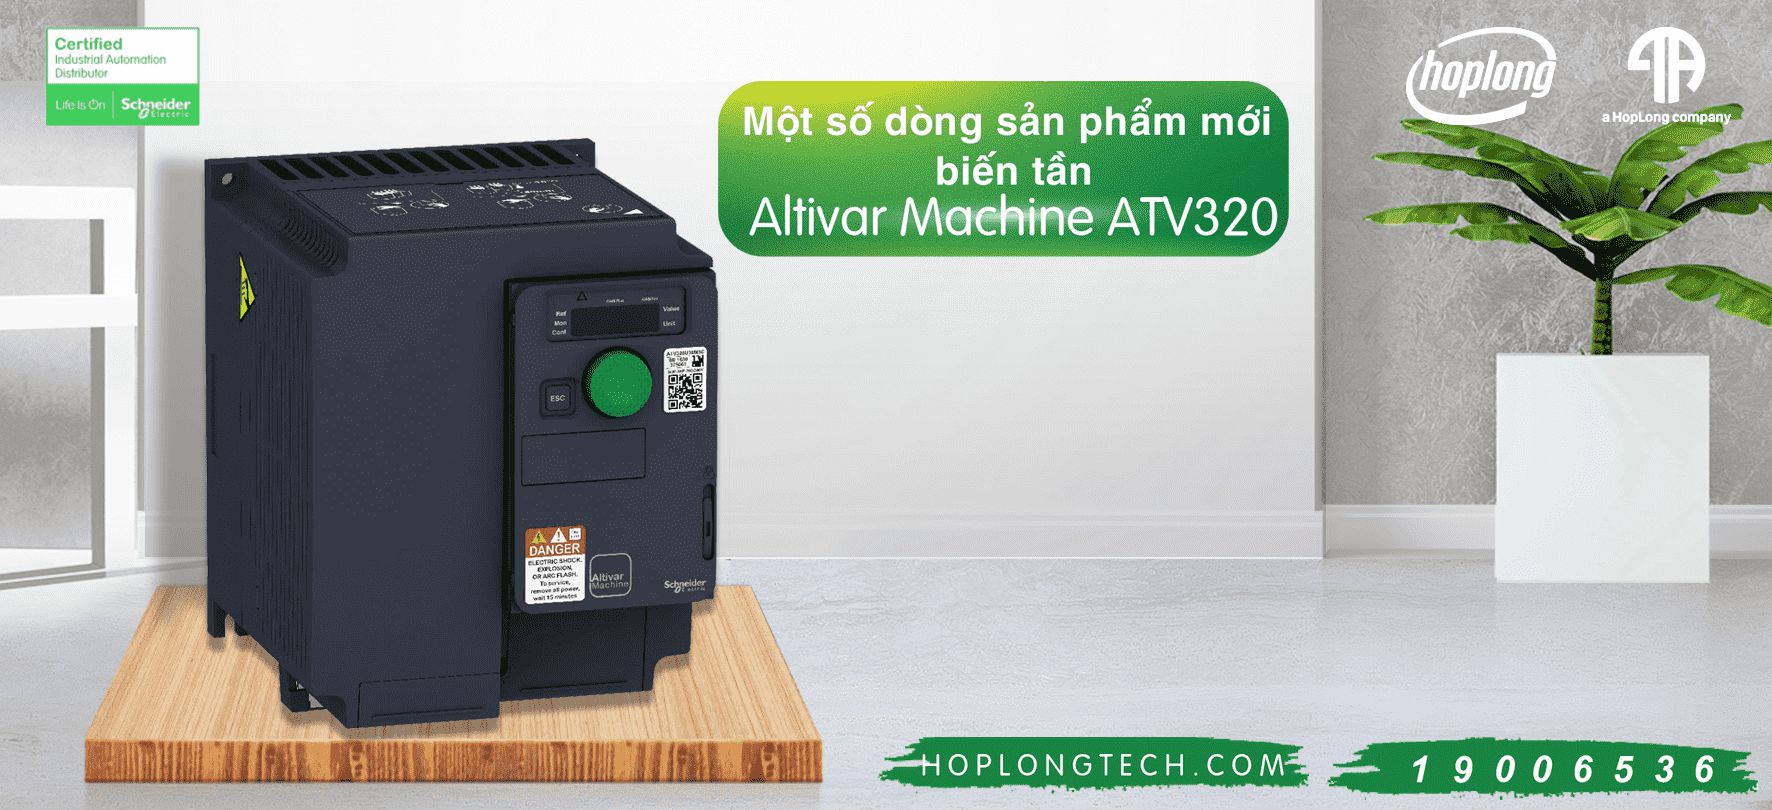 [Schneider – Giới Thiệu] Một số dòng sản phẩm mới biến tần Altivar Machine ATV320